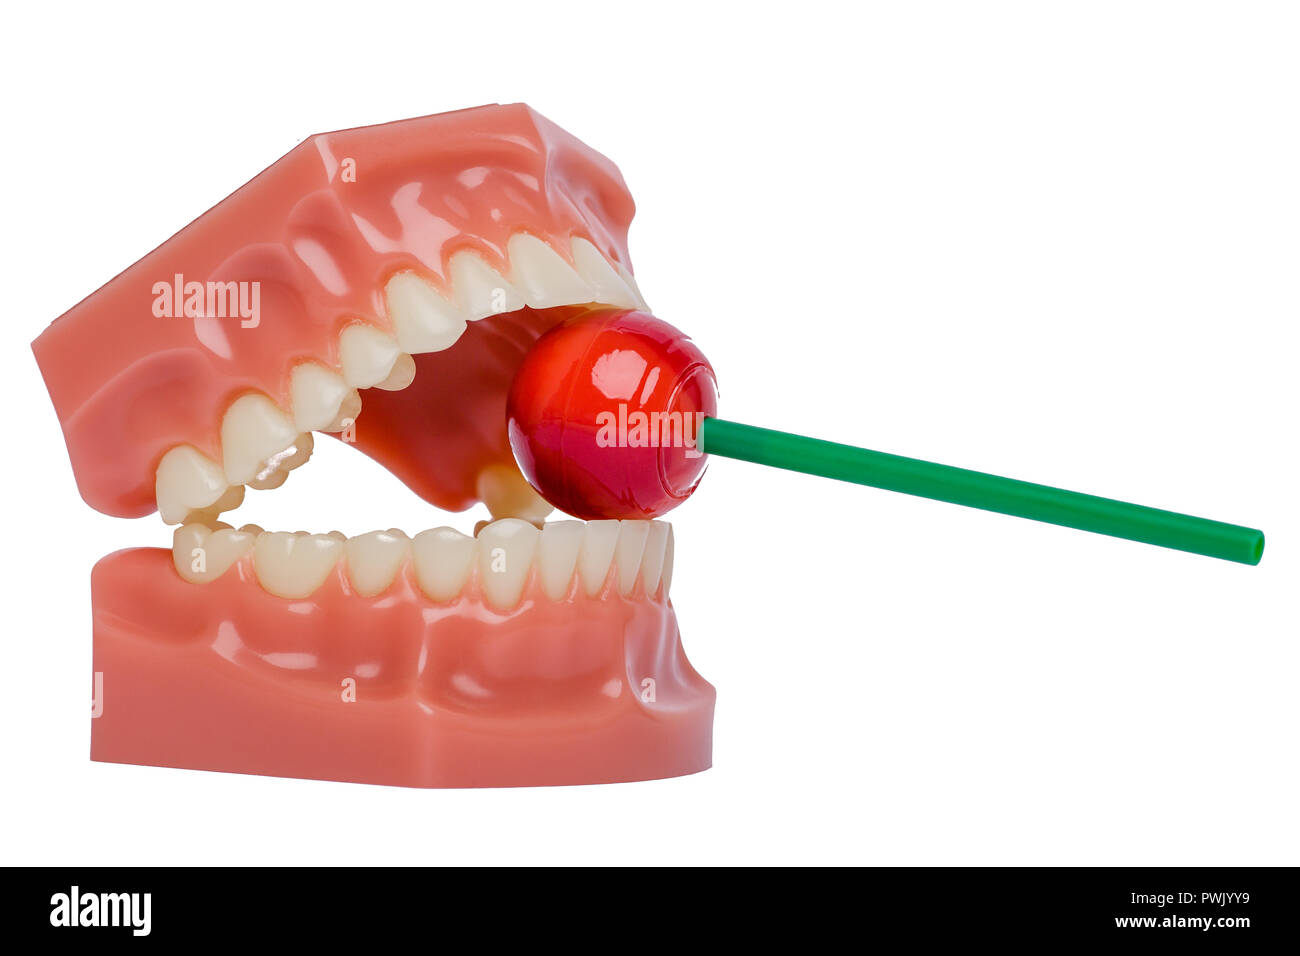 Denti ortodontico modello con red lollipop Foto Stock